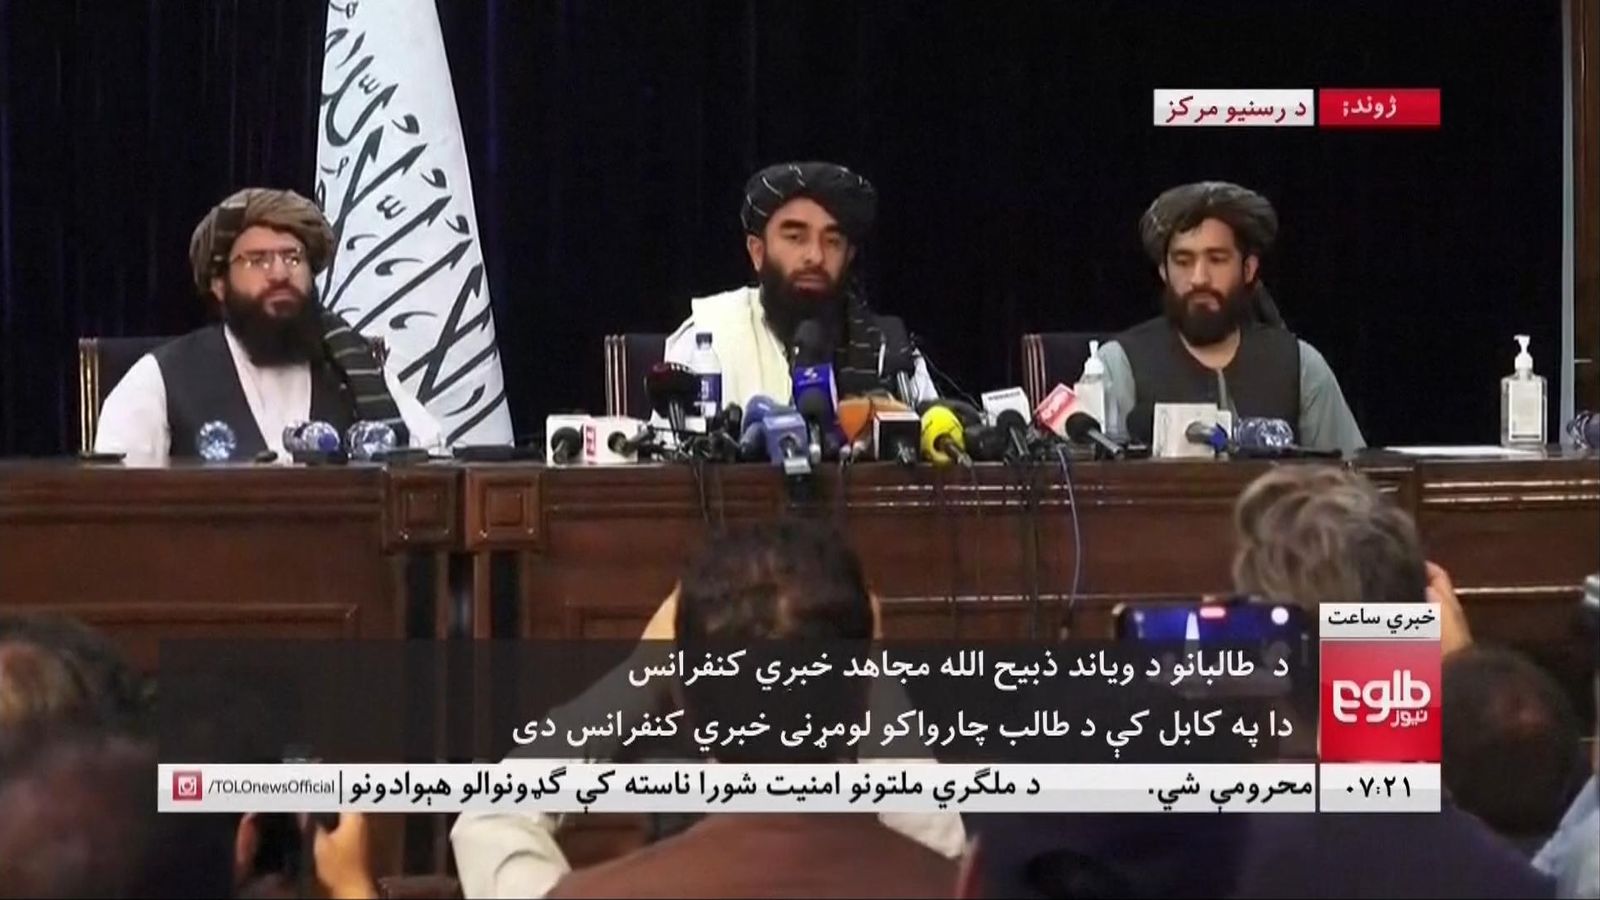 Talibanët shfaqen paqësor në konferencën e parë në Kabul